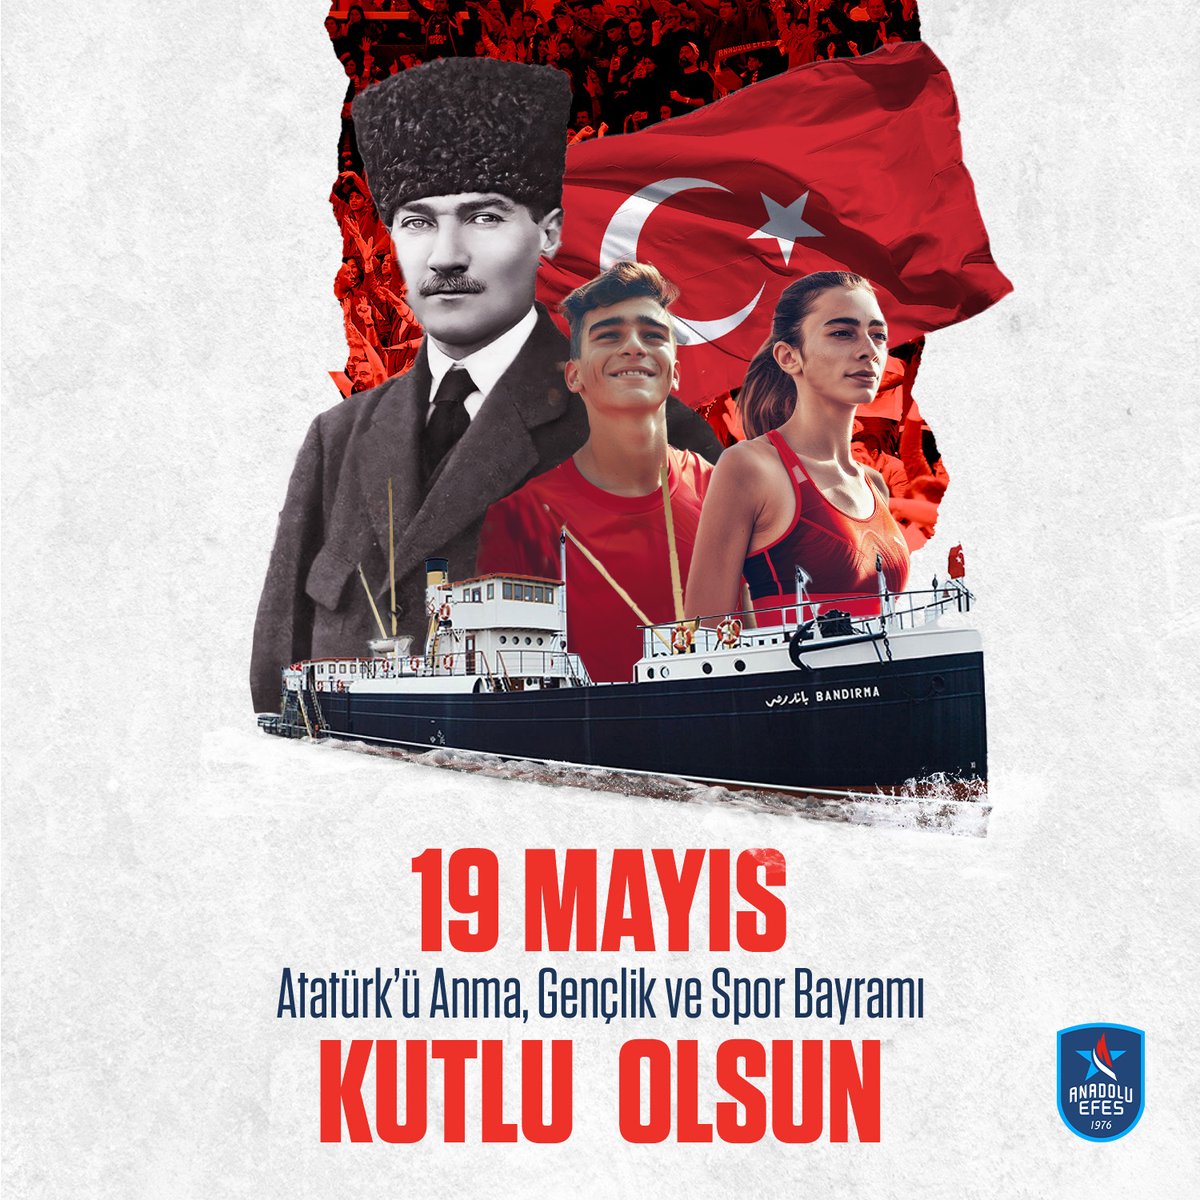 🇹🇷 Bugün, bağımsızlık mücadelemizin ilk adımının atıldığı gün... Ulu Önderimiz Gazi Mustafa Kemal Atatürk'ün izinde, gençliğimizin ve sporun gücüyle geleceğe emin adımlarla ilerliyoruz. #19Mayıs Atatürk'ü Anma, Gençlik ve Spor Bayramı kutlu olsun! #BenimYerimBurası